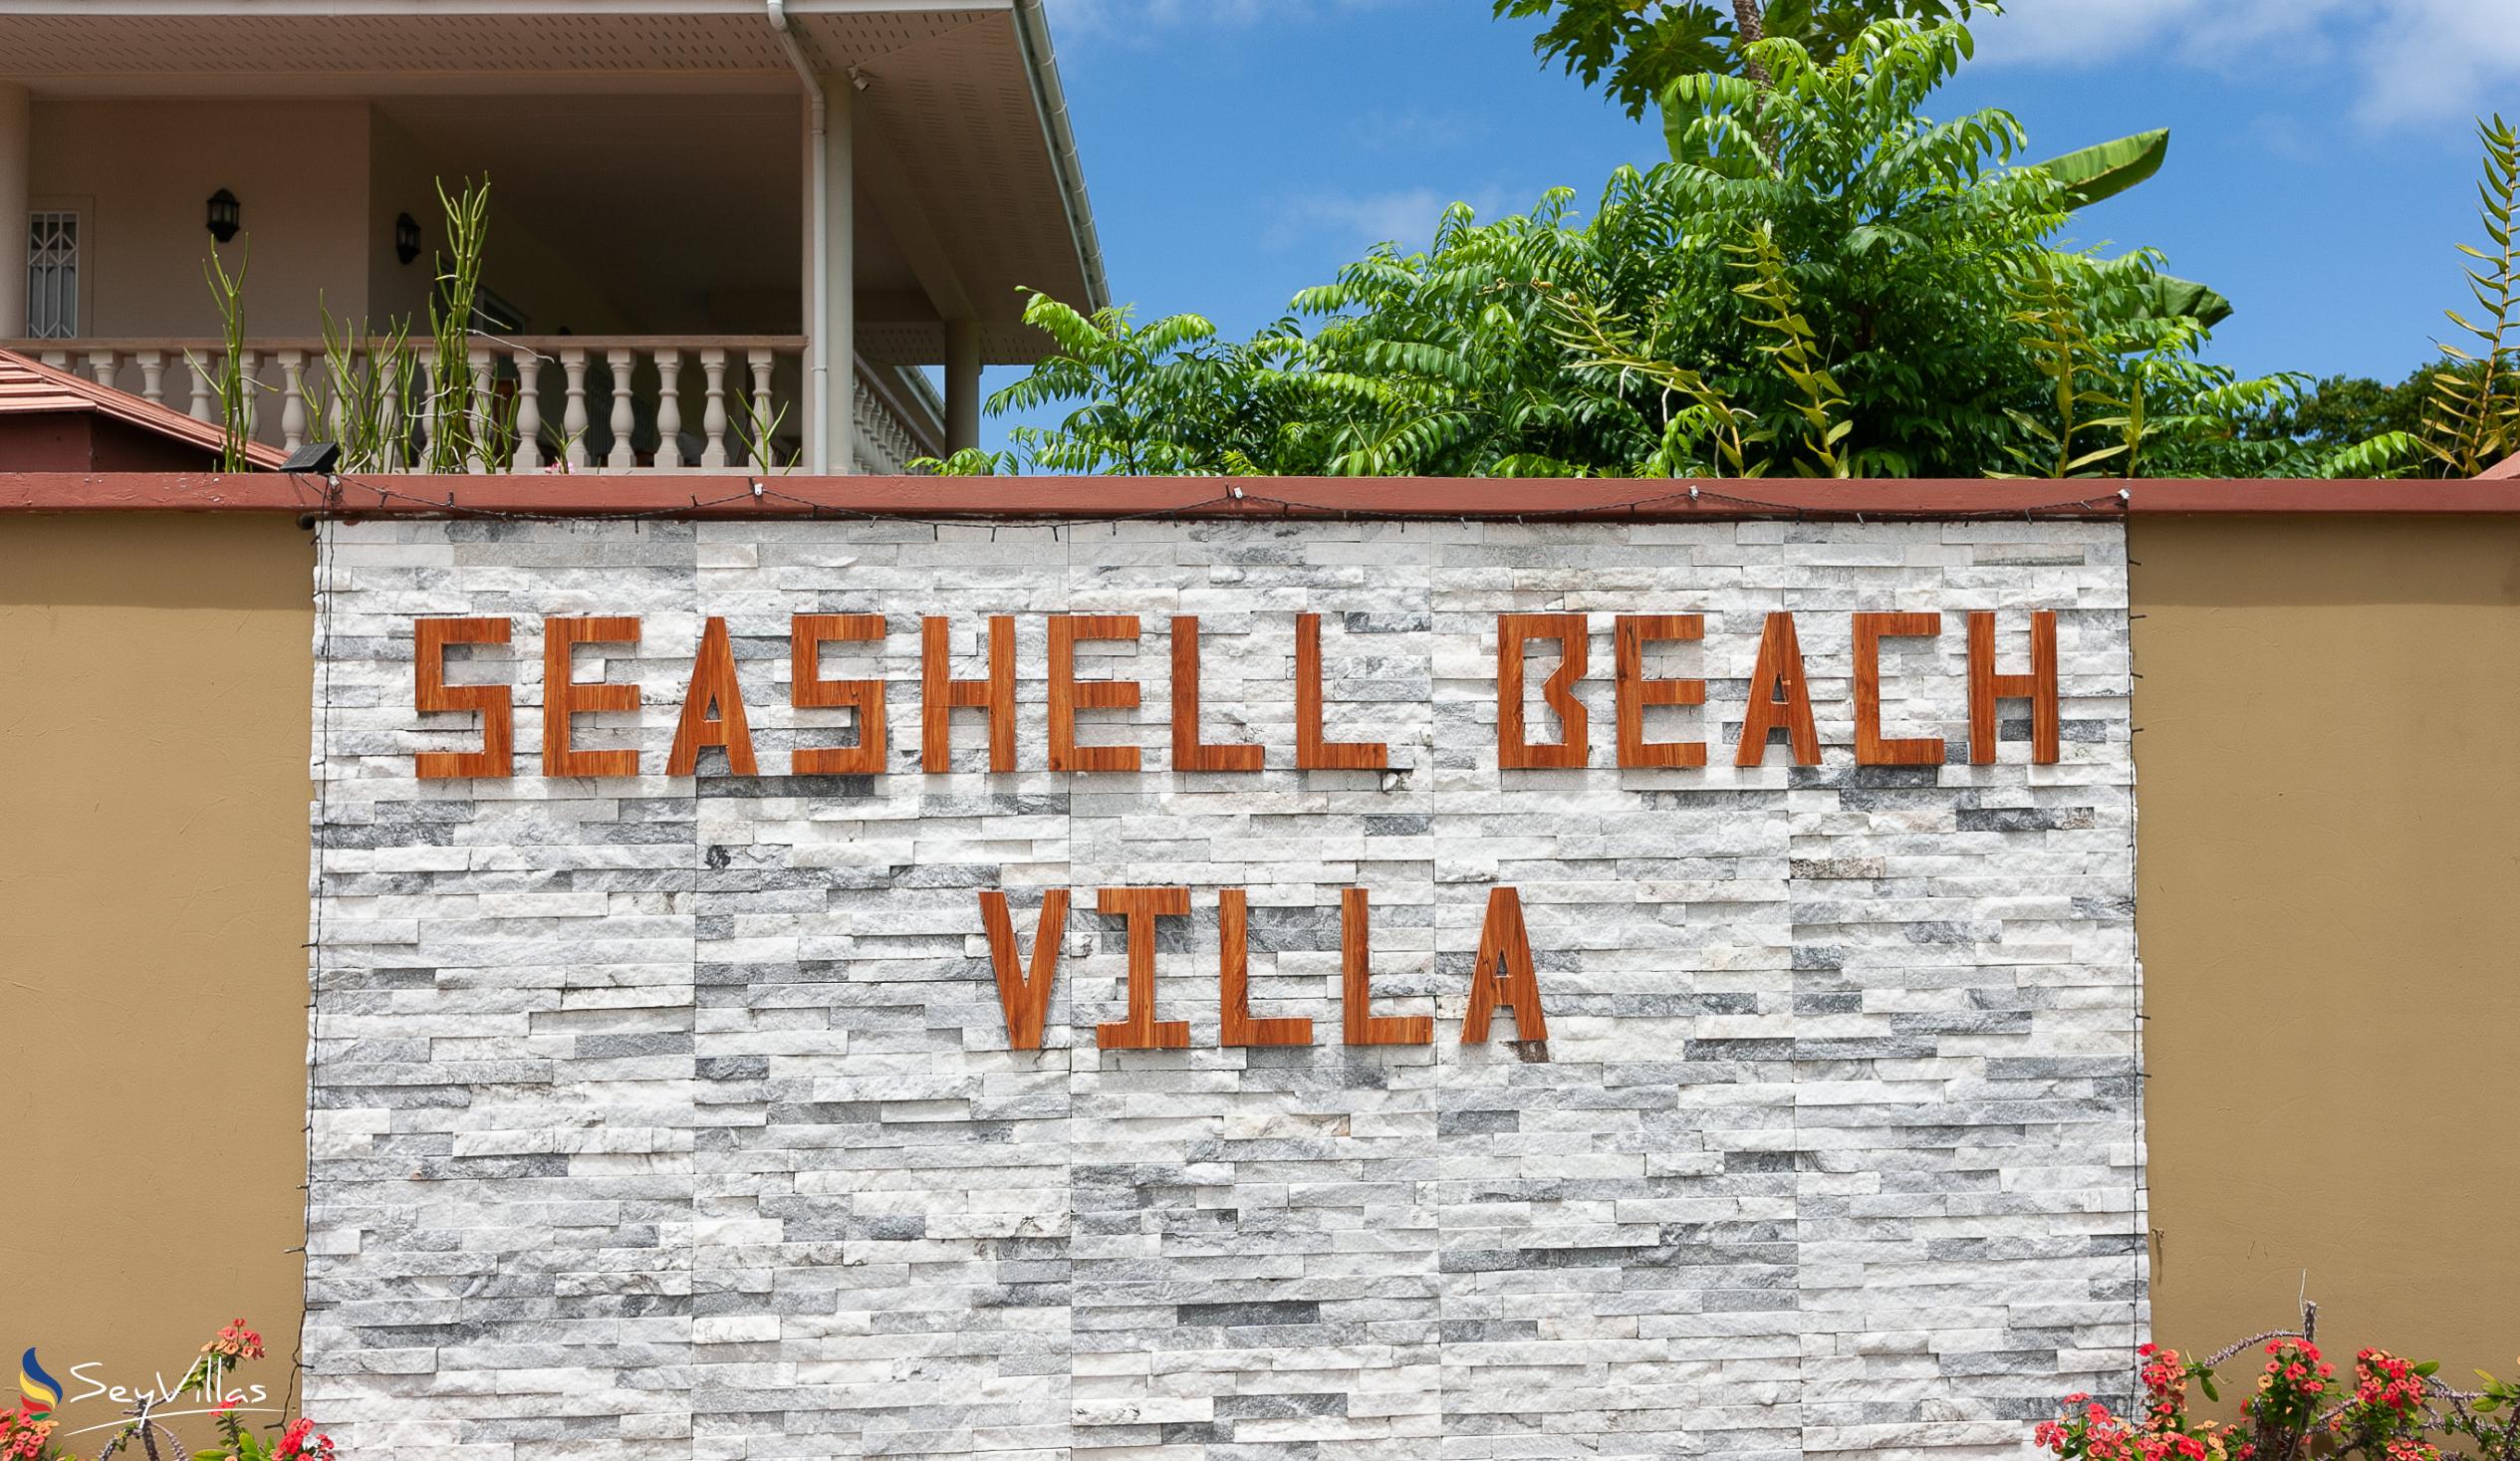 Photo 14: Seashell Beach Villa - Outdoor area - Praslin (Seychelles)